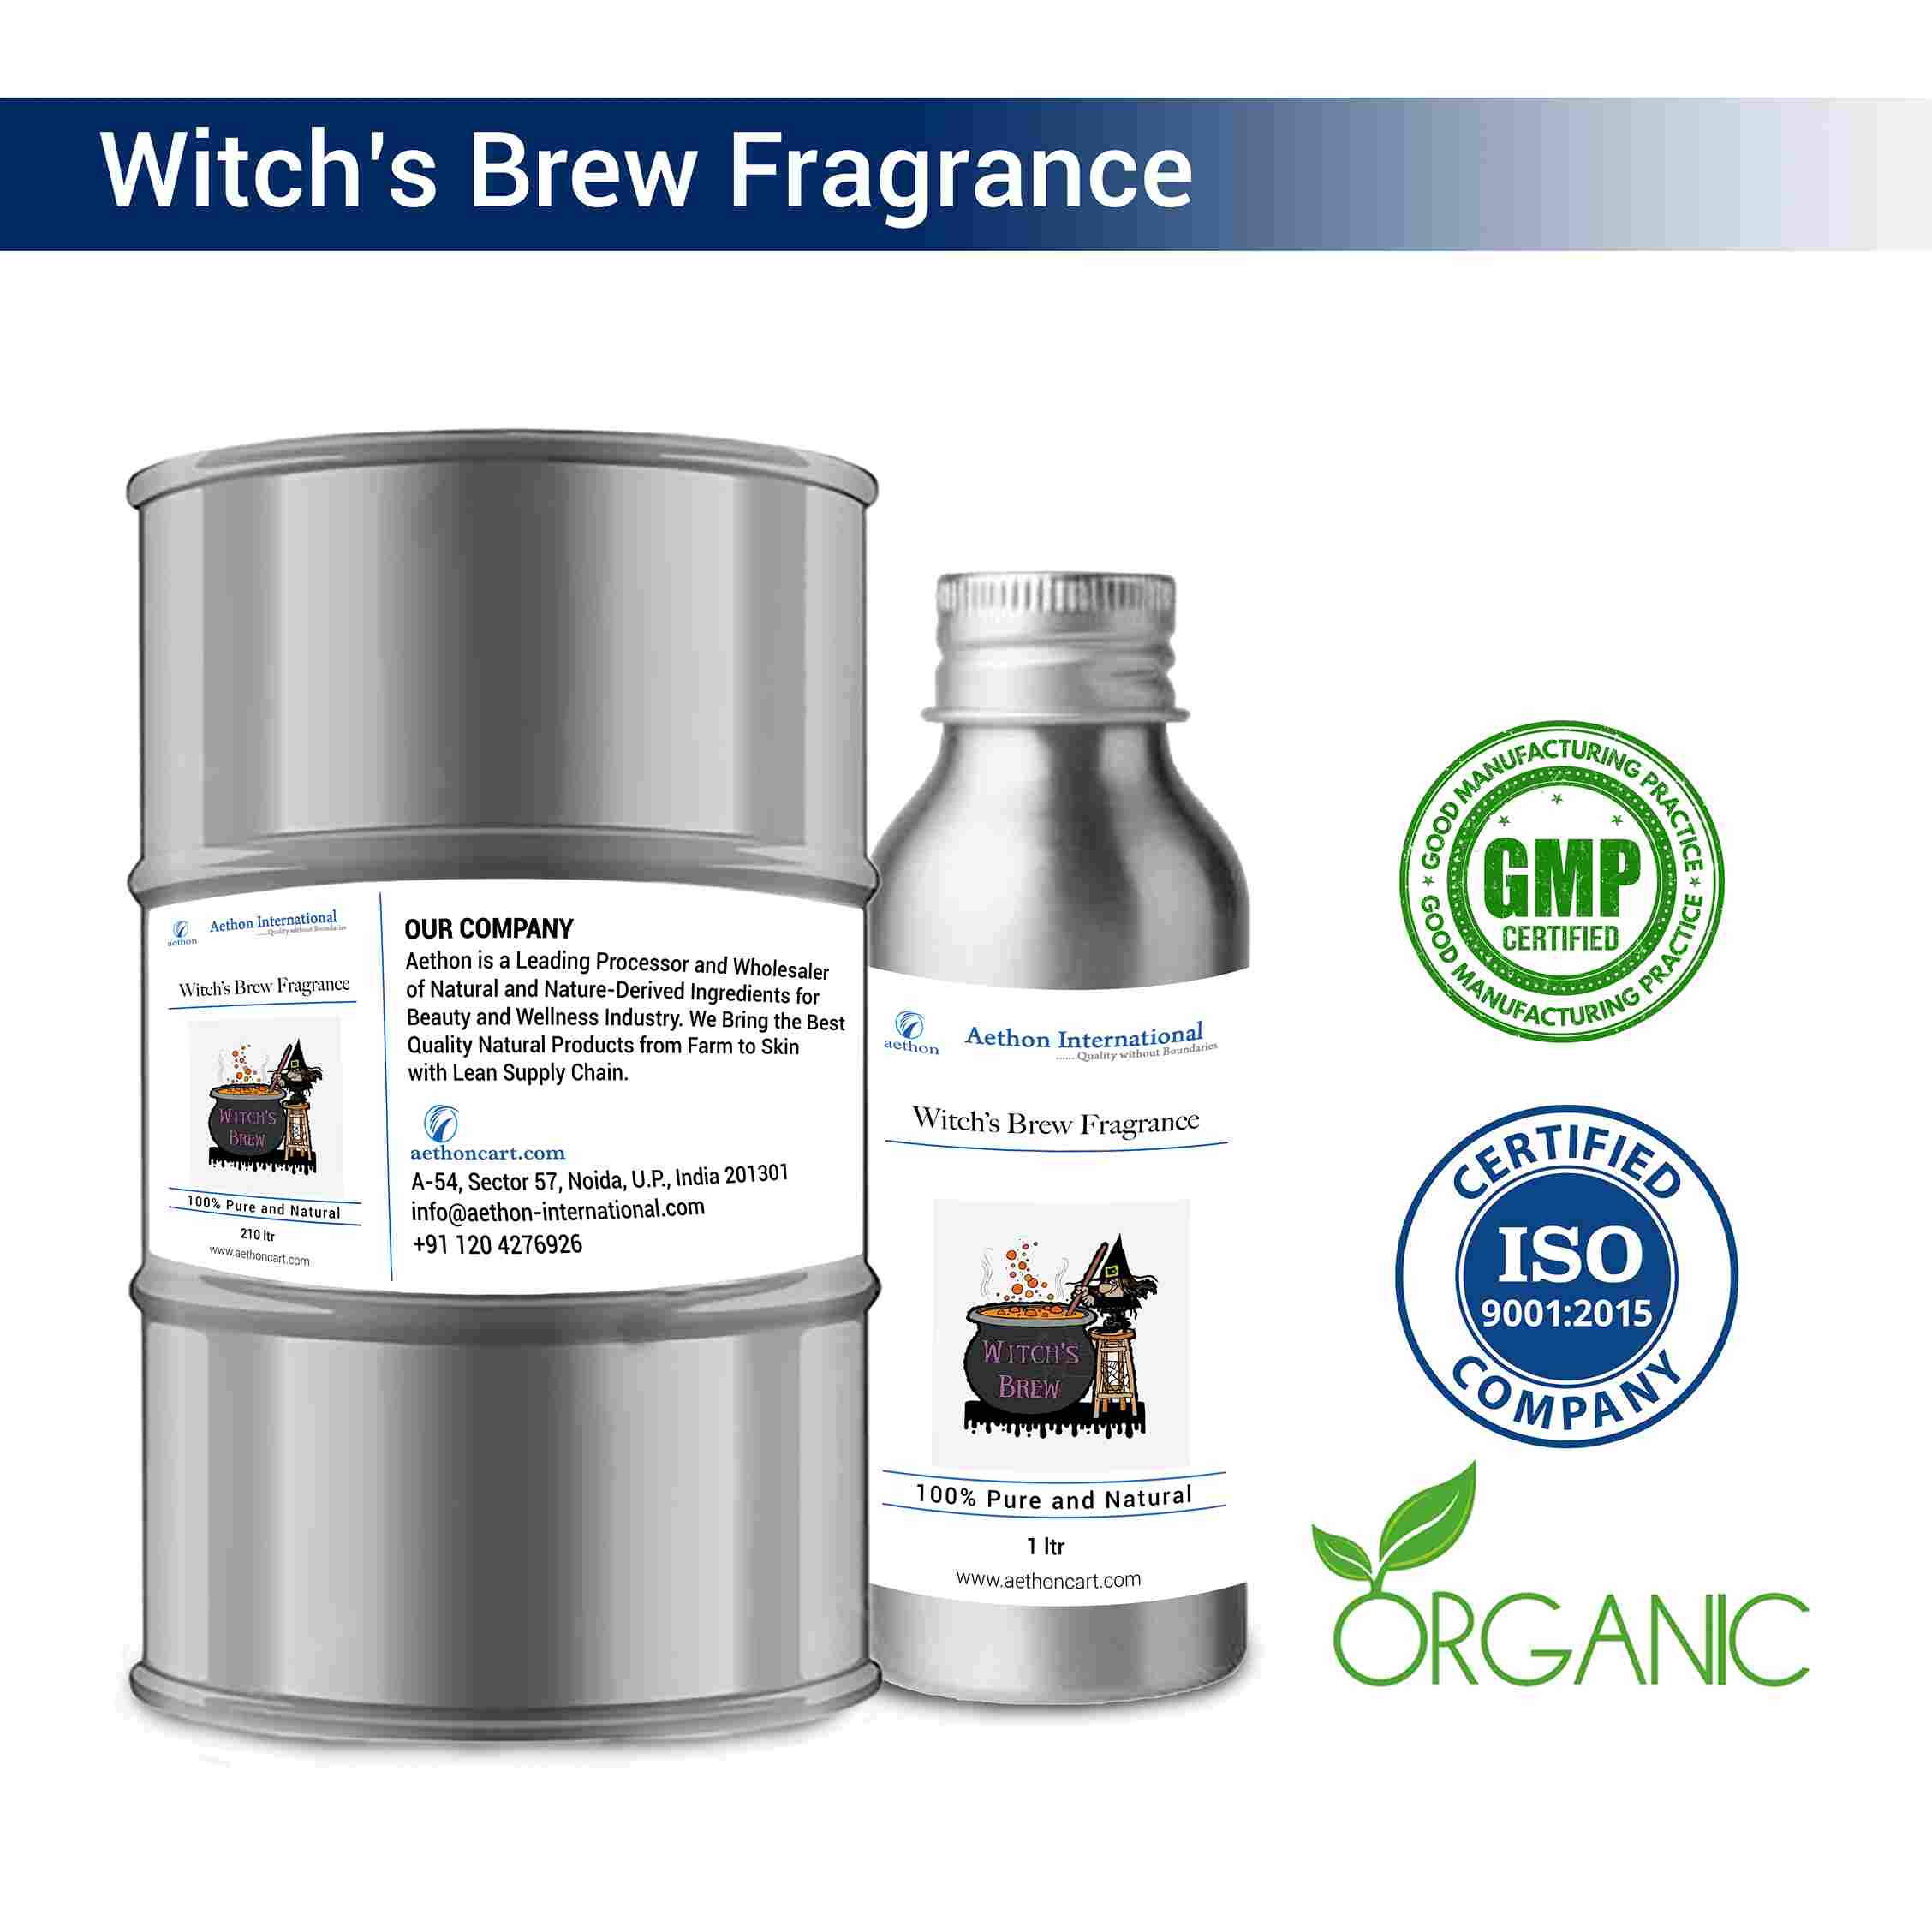 Witch’s Brew Fragrance